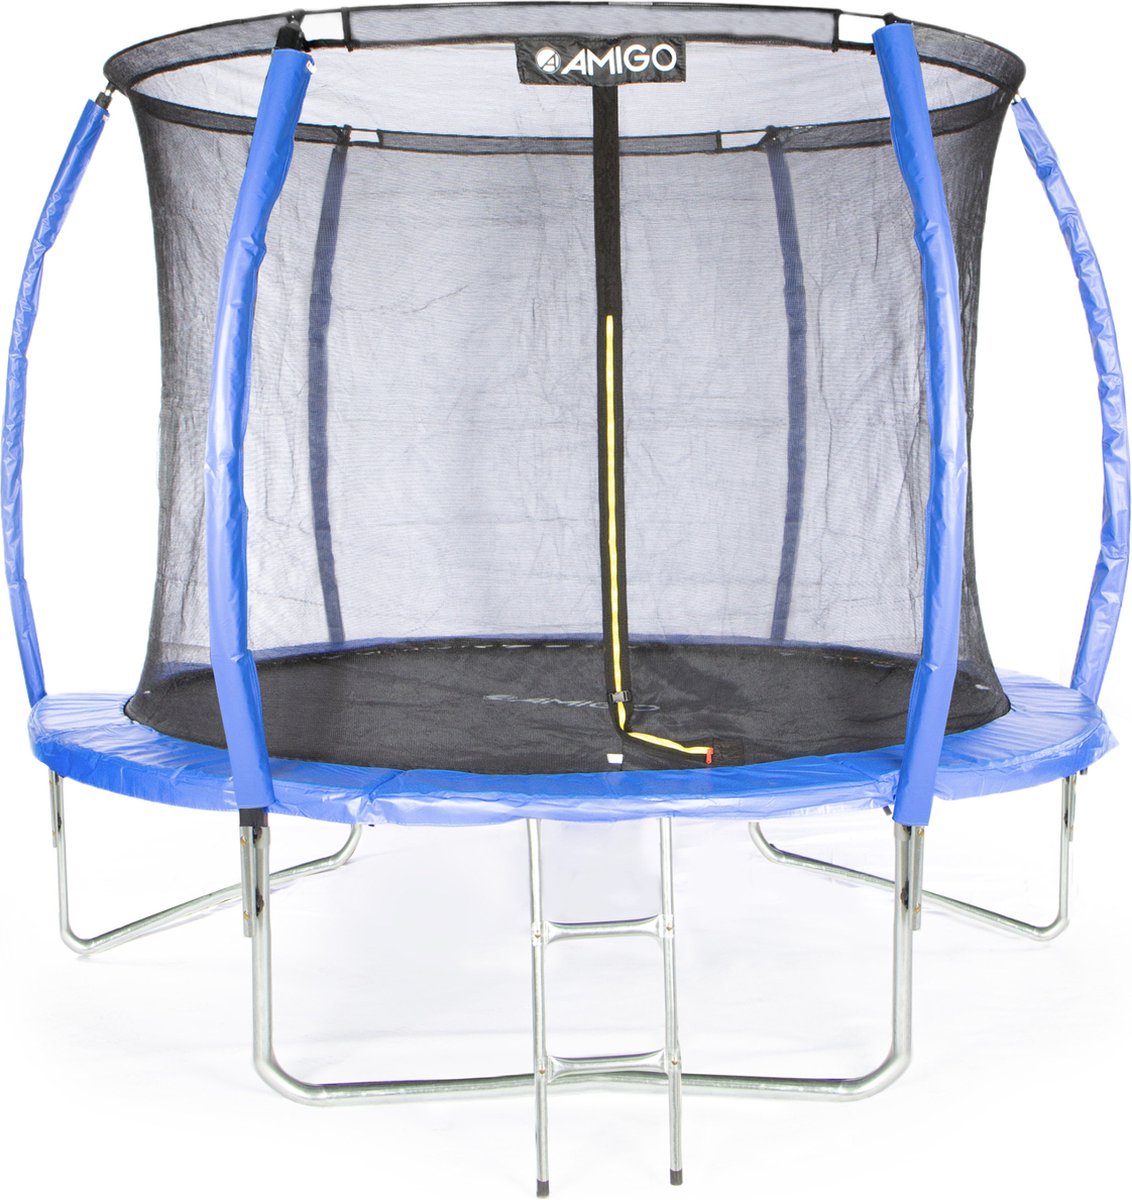 Tire ressorts - Outil pour le montage de trampolines